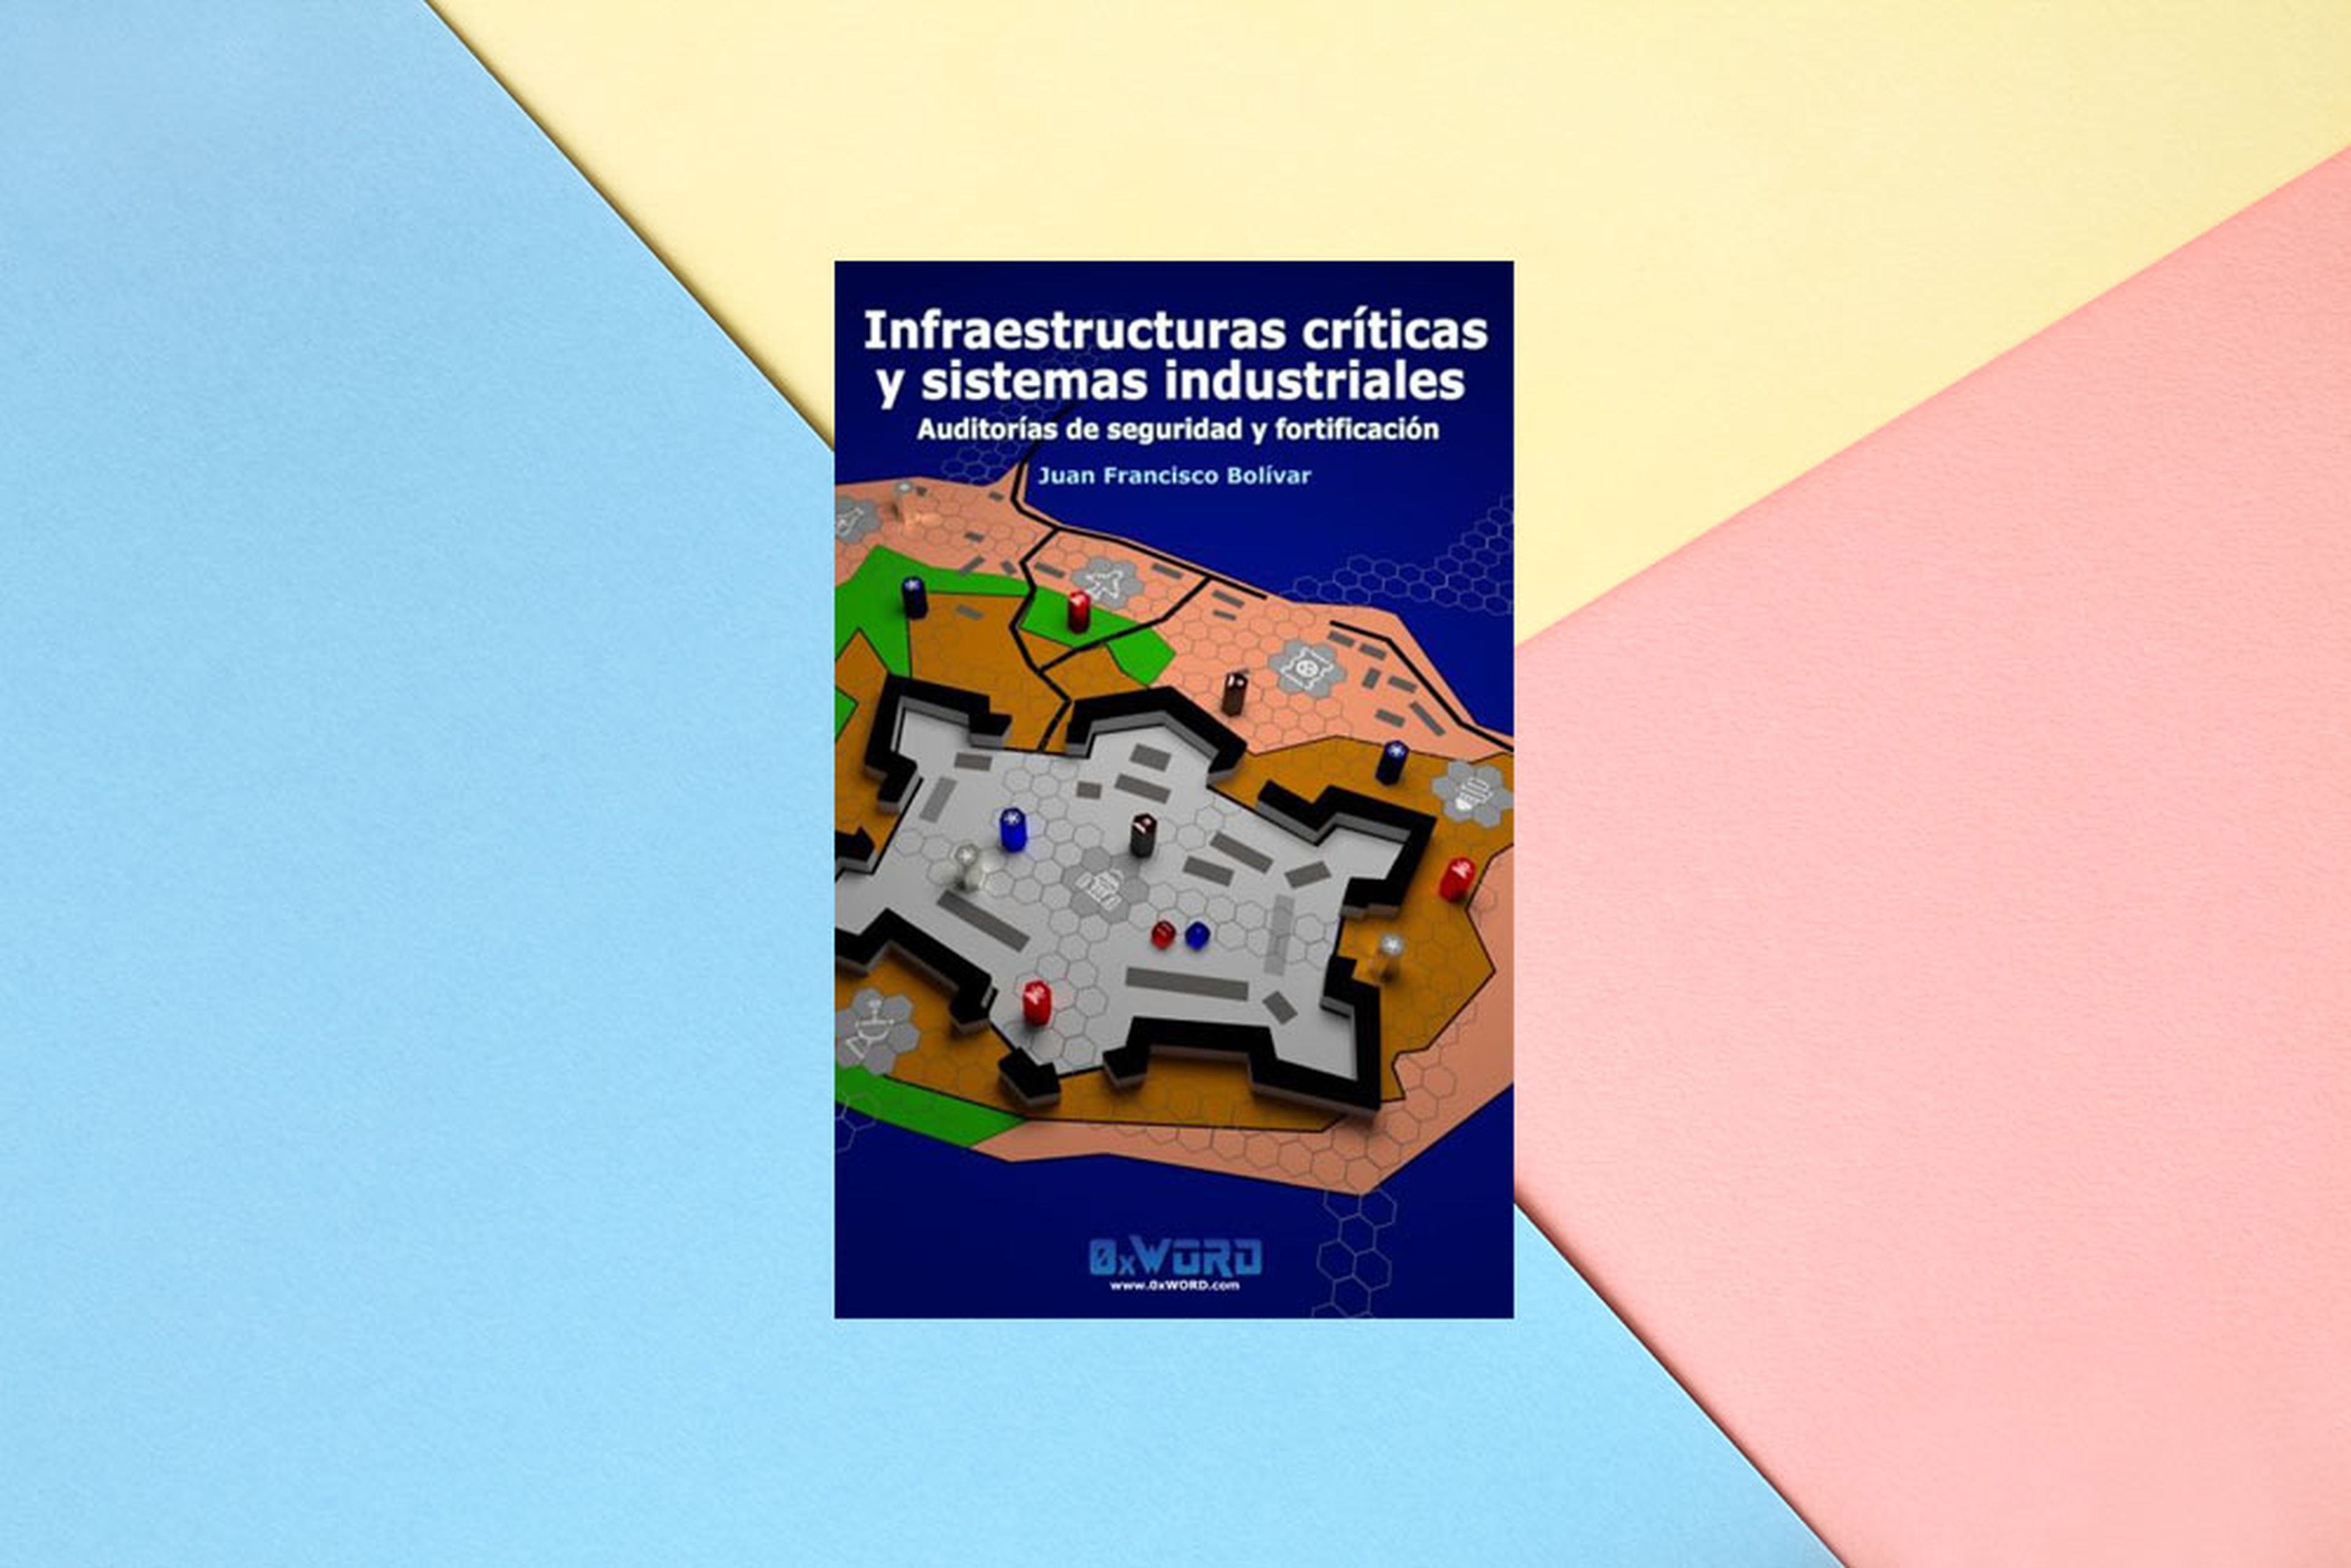 Infraestructuras críticas libro